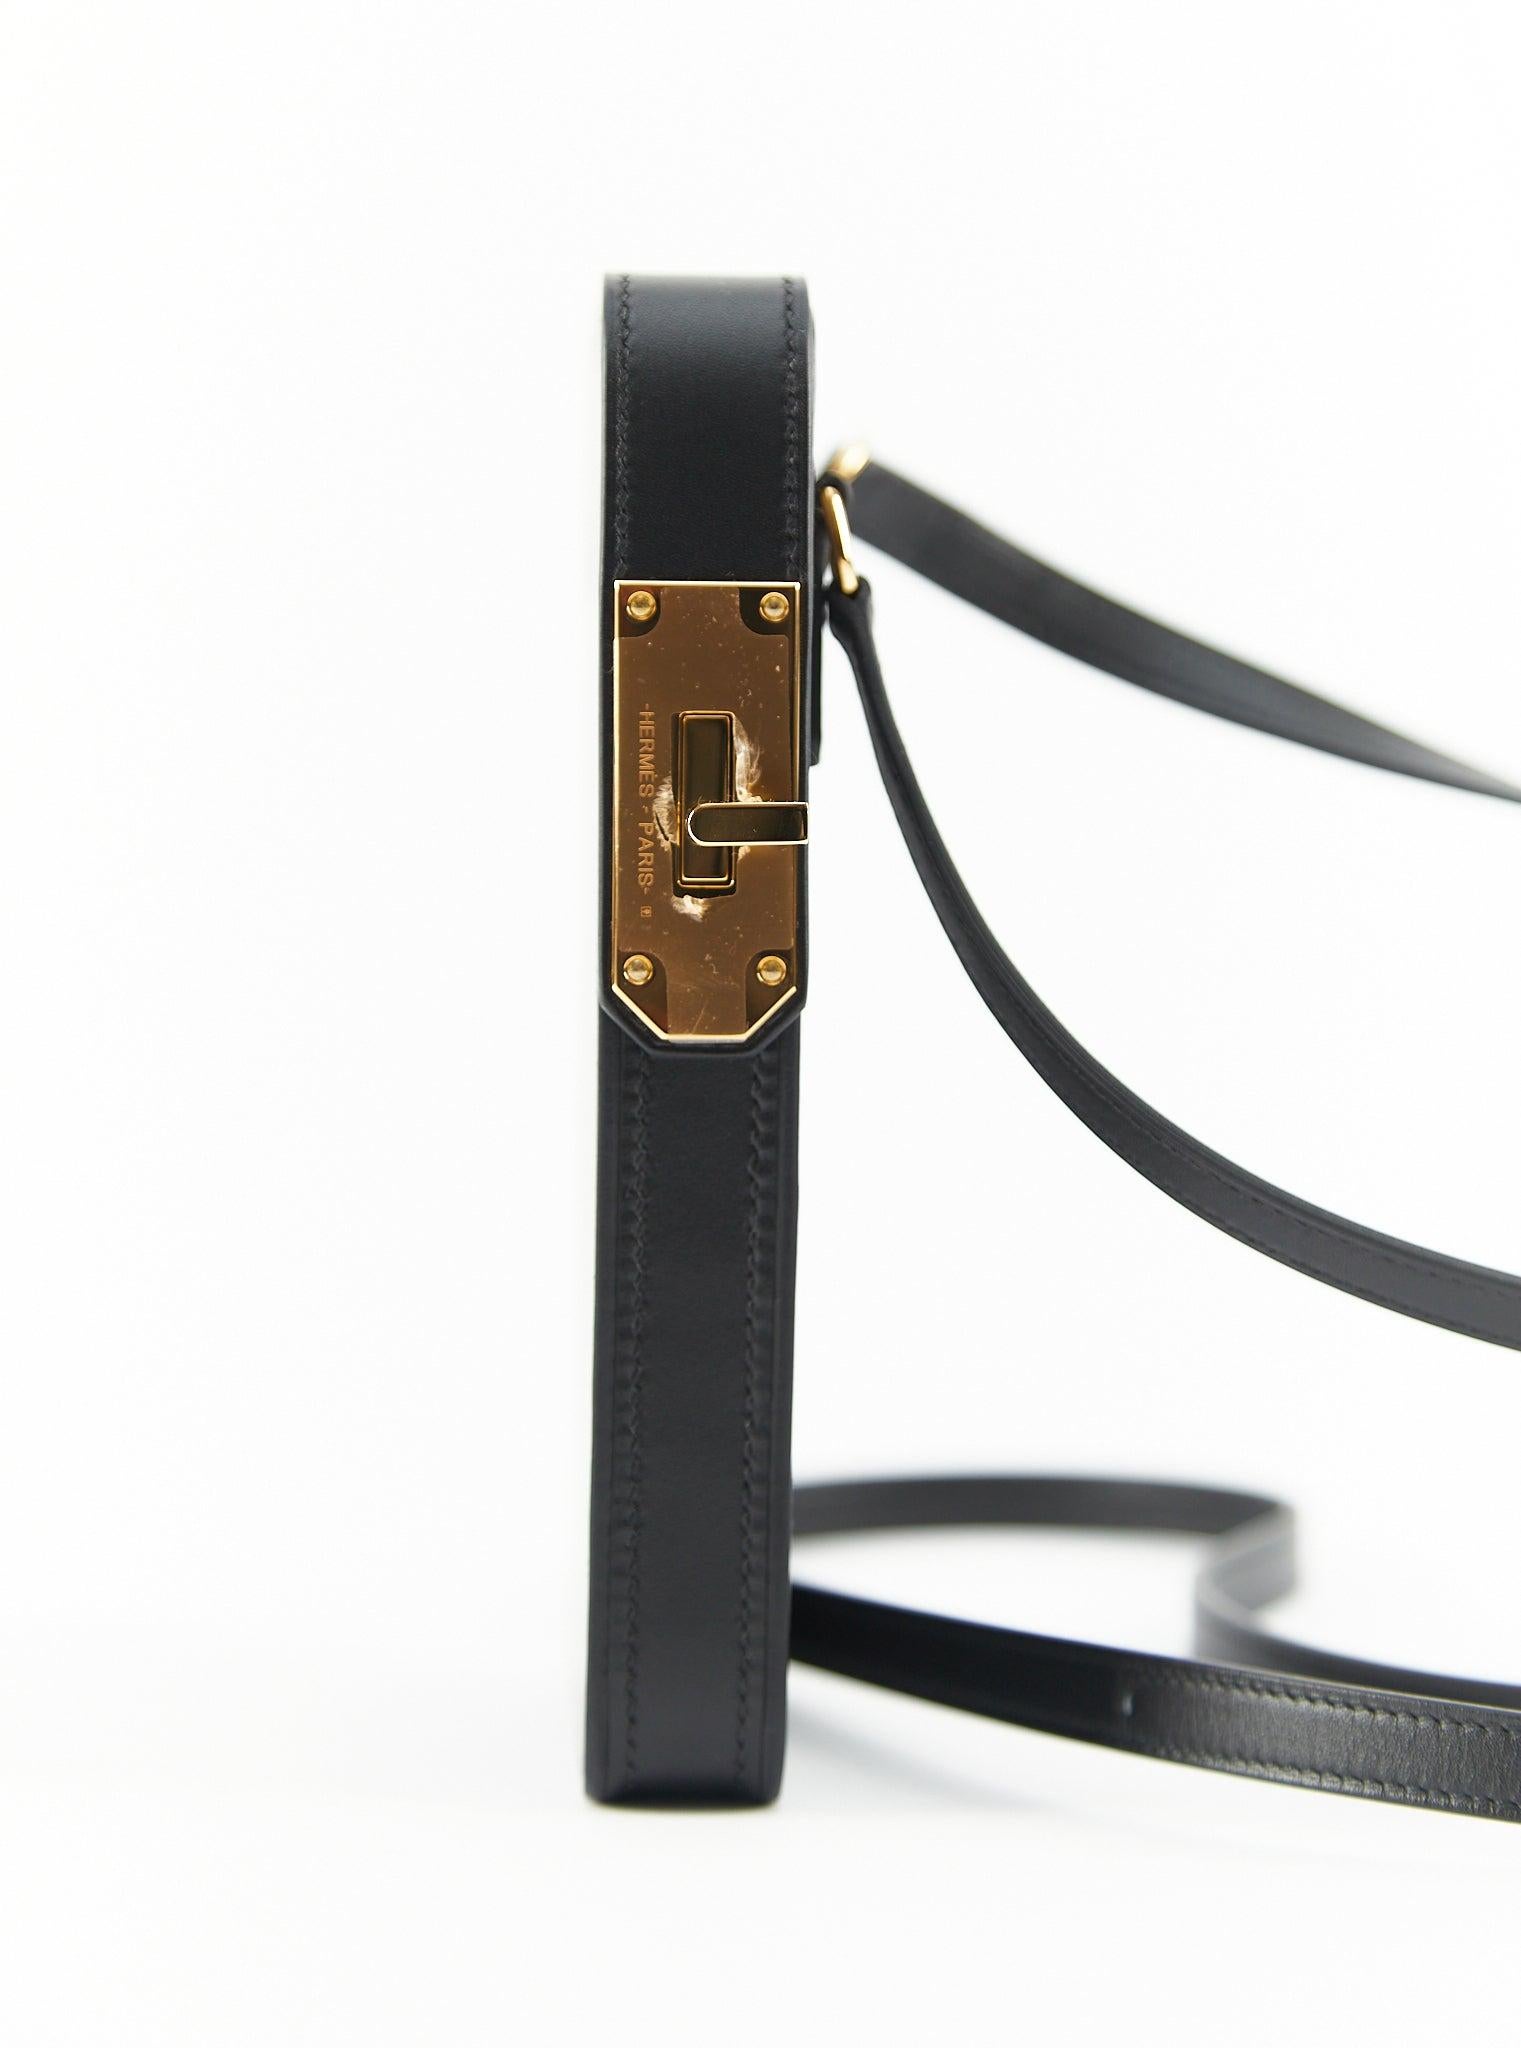 Hermès Hermesway Handytasche in Schwarz

Tadelakt Leder mit Gold Hardware 

Begleitet von: Hermès Box, Hermès Staubbeutel & Schleife 

Abmessungen: L 8,7 x H 16,5 x T 2,2 cm